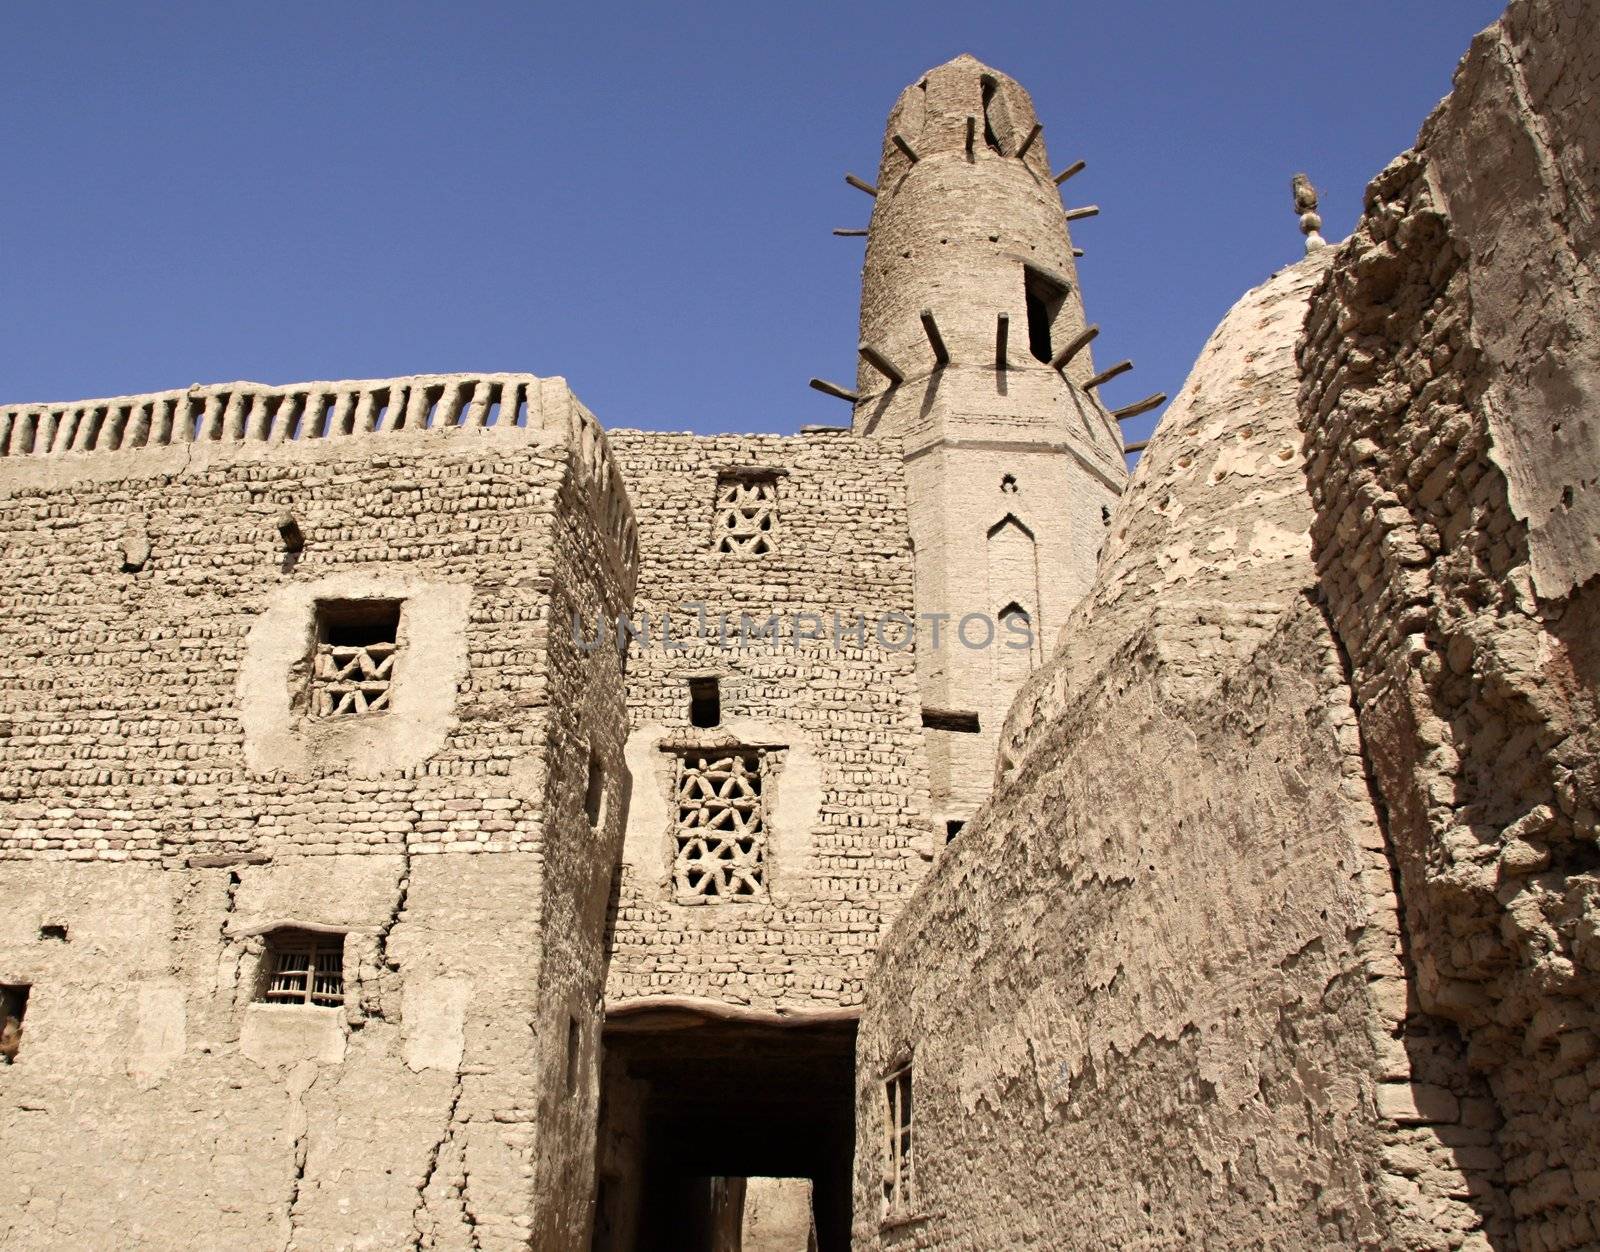 Al-Qasr,old Islamic town ,Dachla oasis